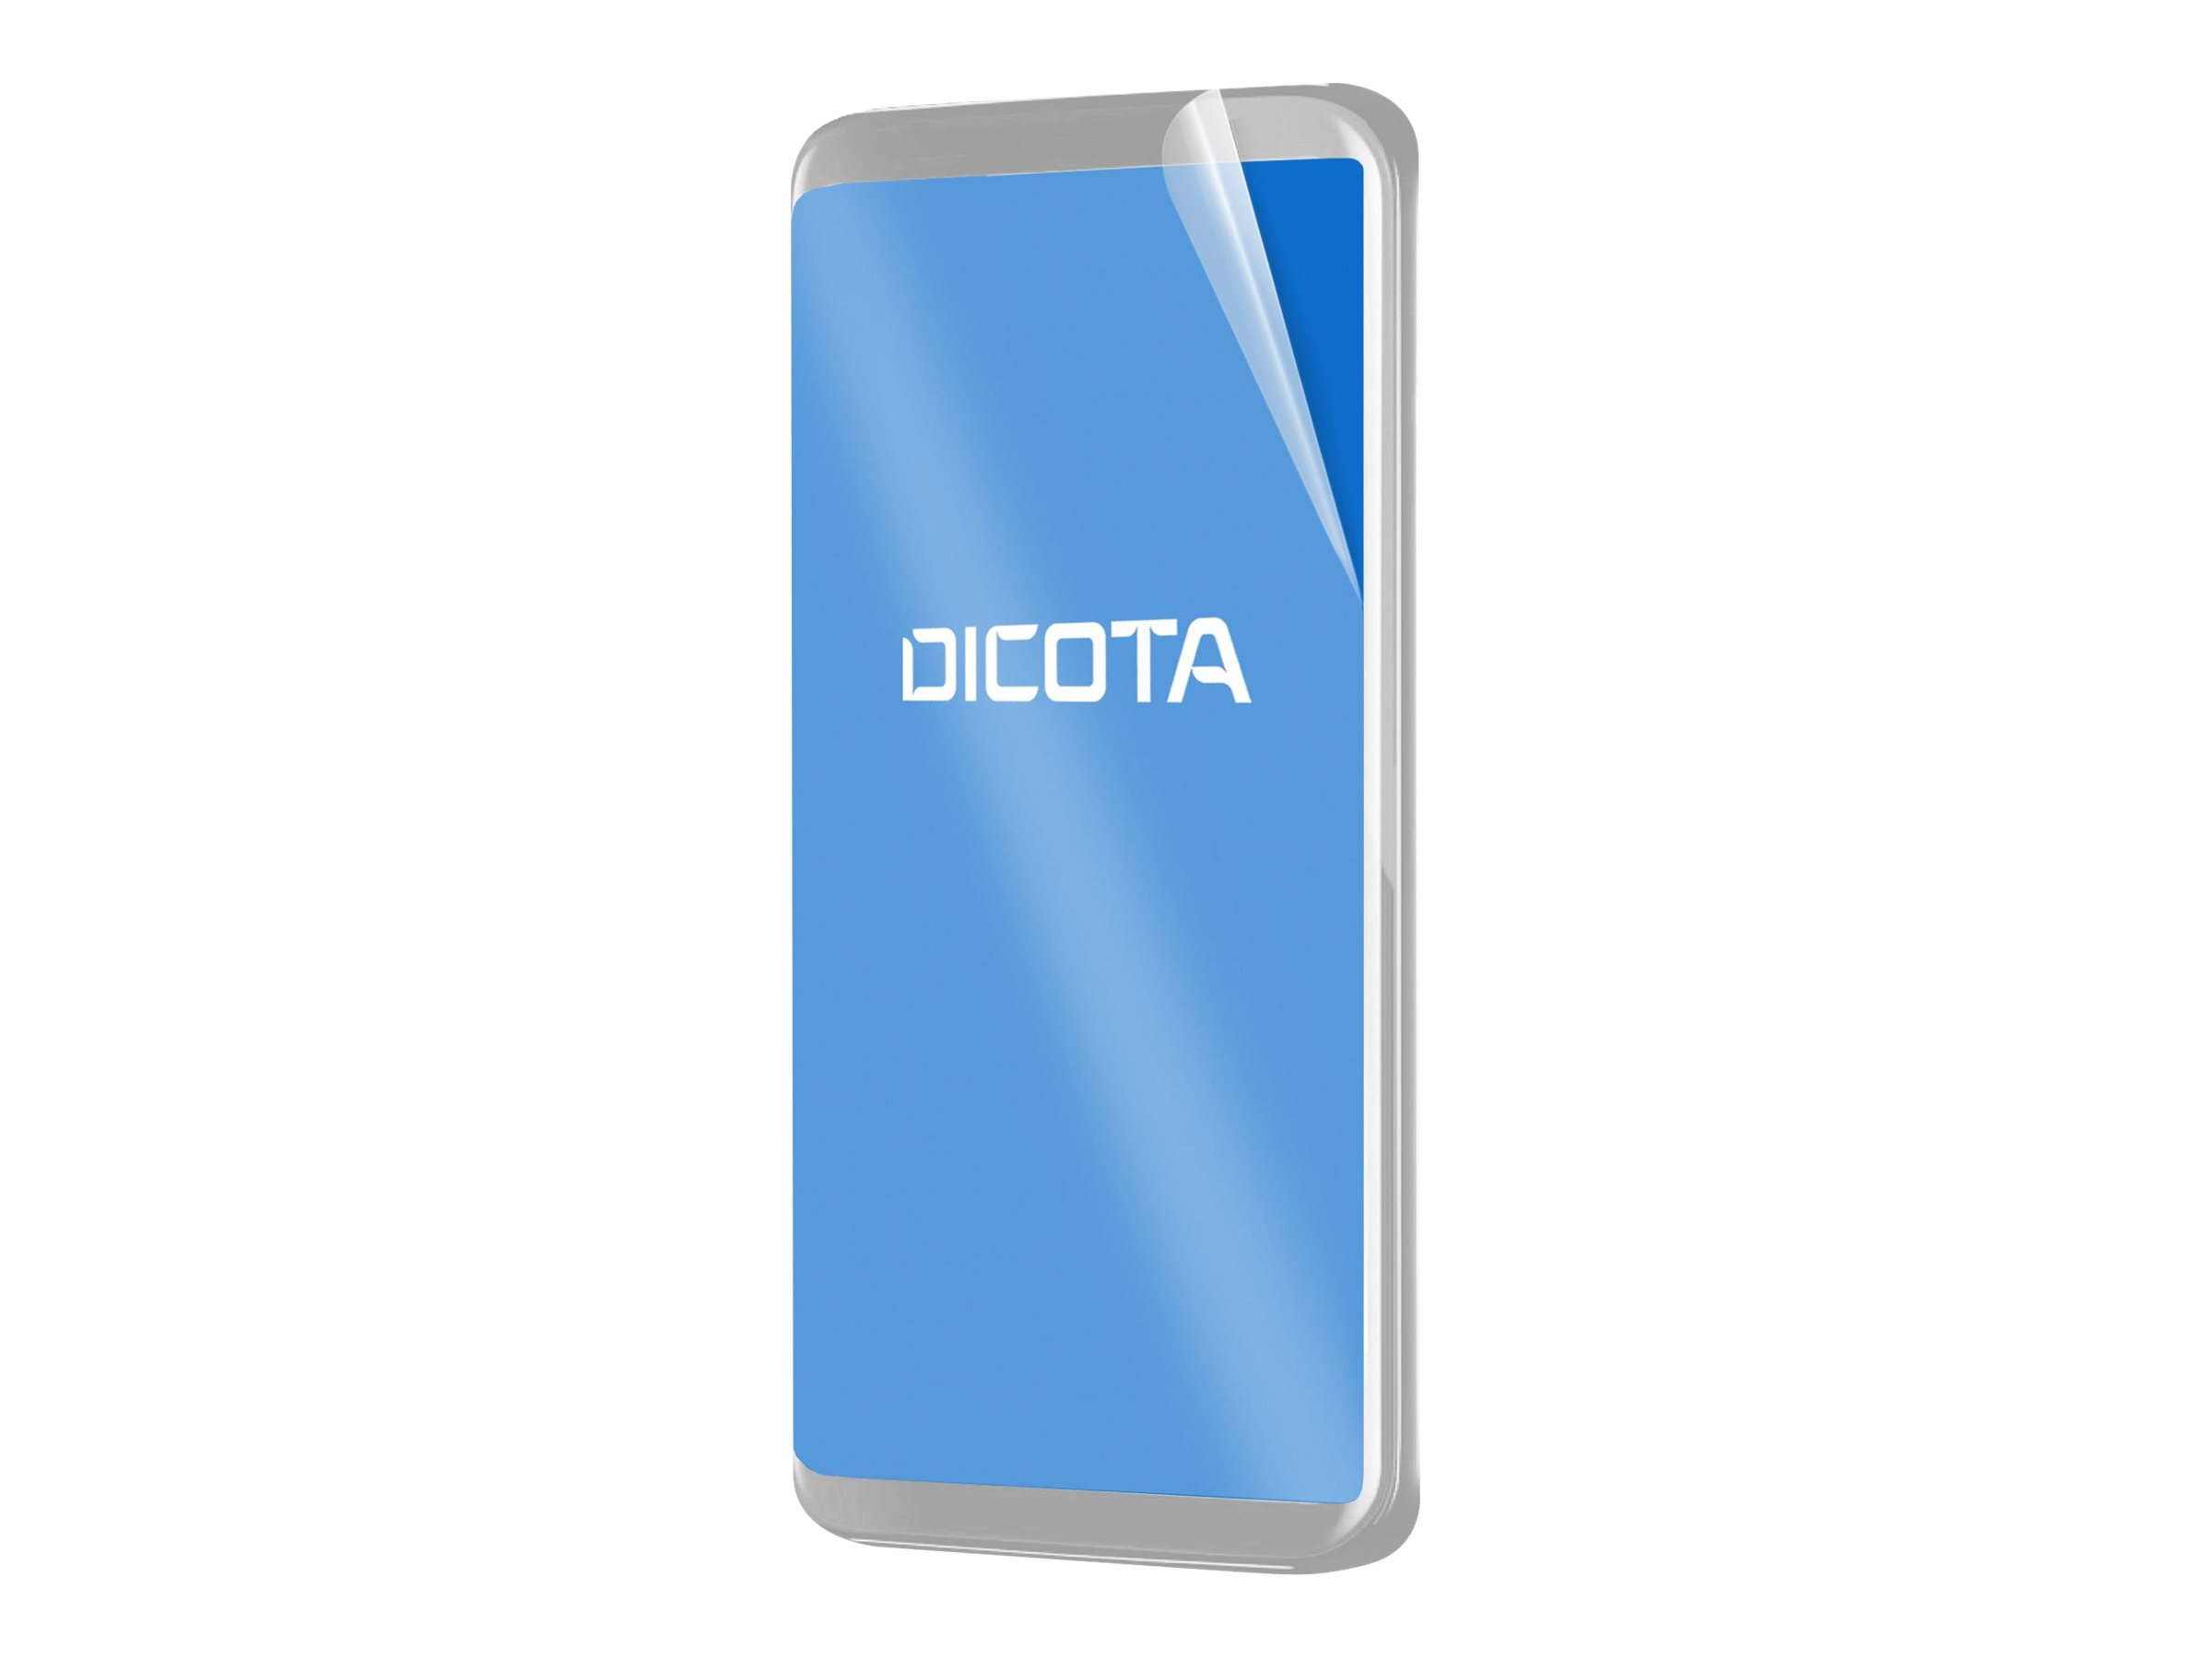 DICOTA - Bildschirmschutz fr Handy - antimikrobieller Filter, 2H, selbstklebend - Folie - durchsichtig - fr Samsung Galaxy (CH